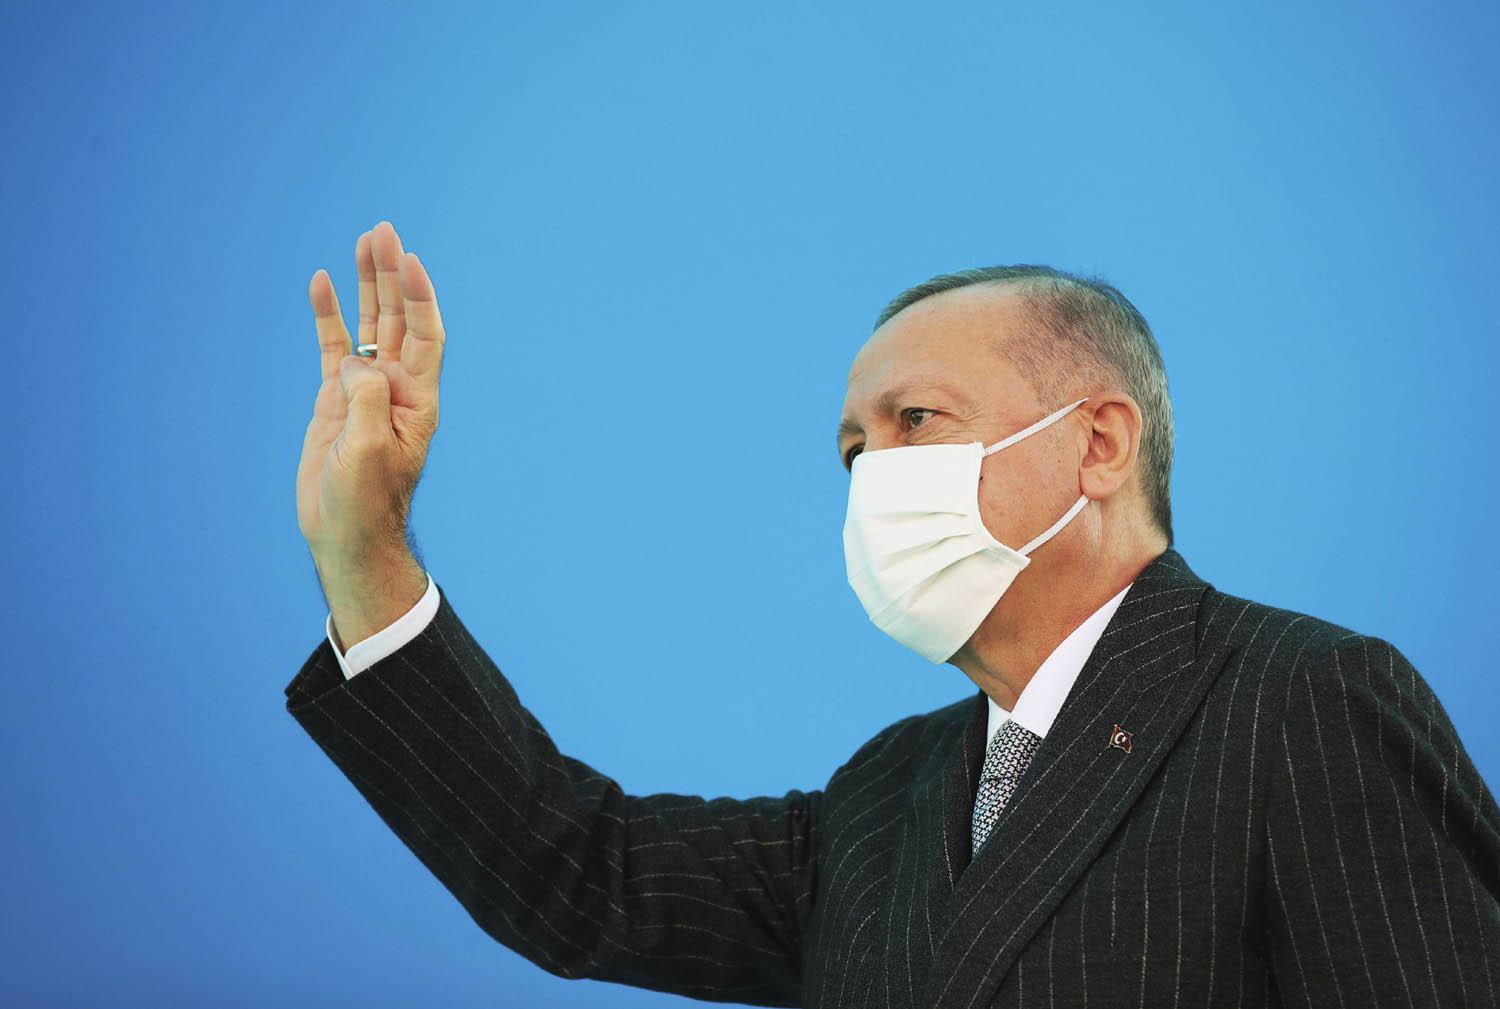 الرئيس التركي رجب طيب أردوغان يلوح لمناصريه